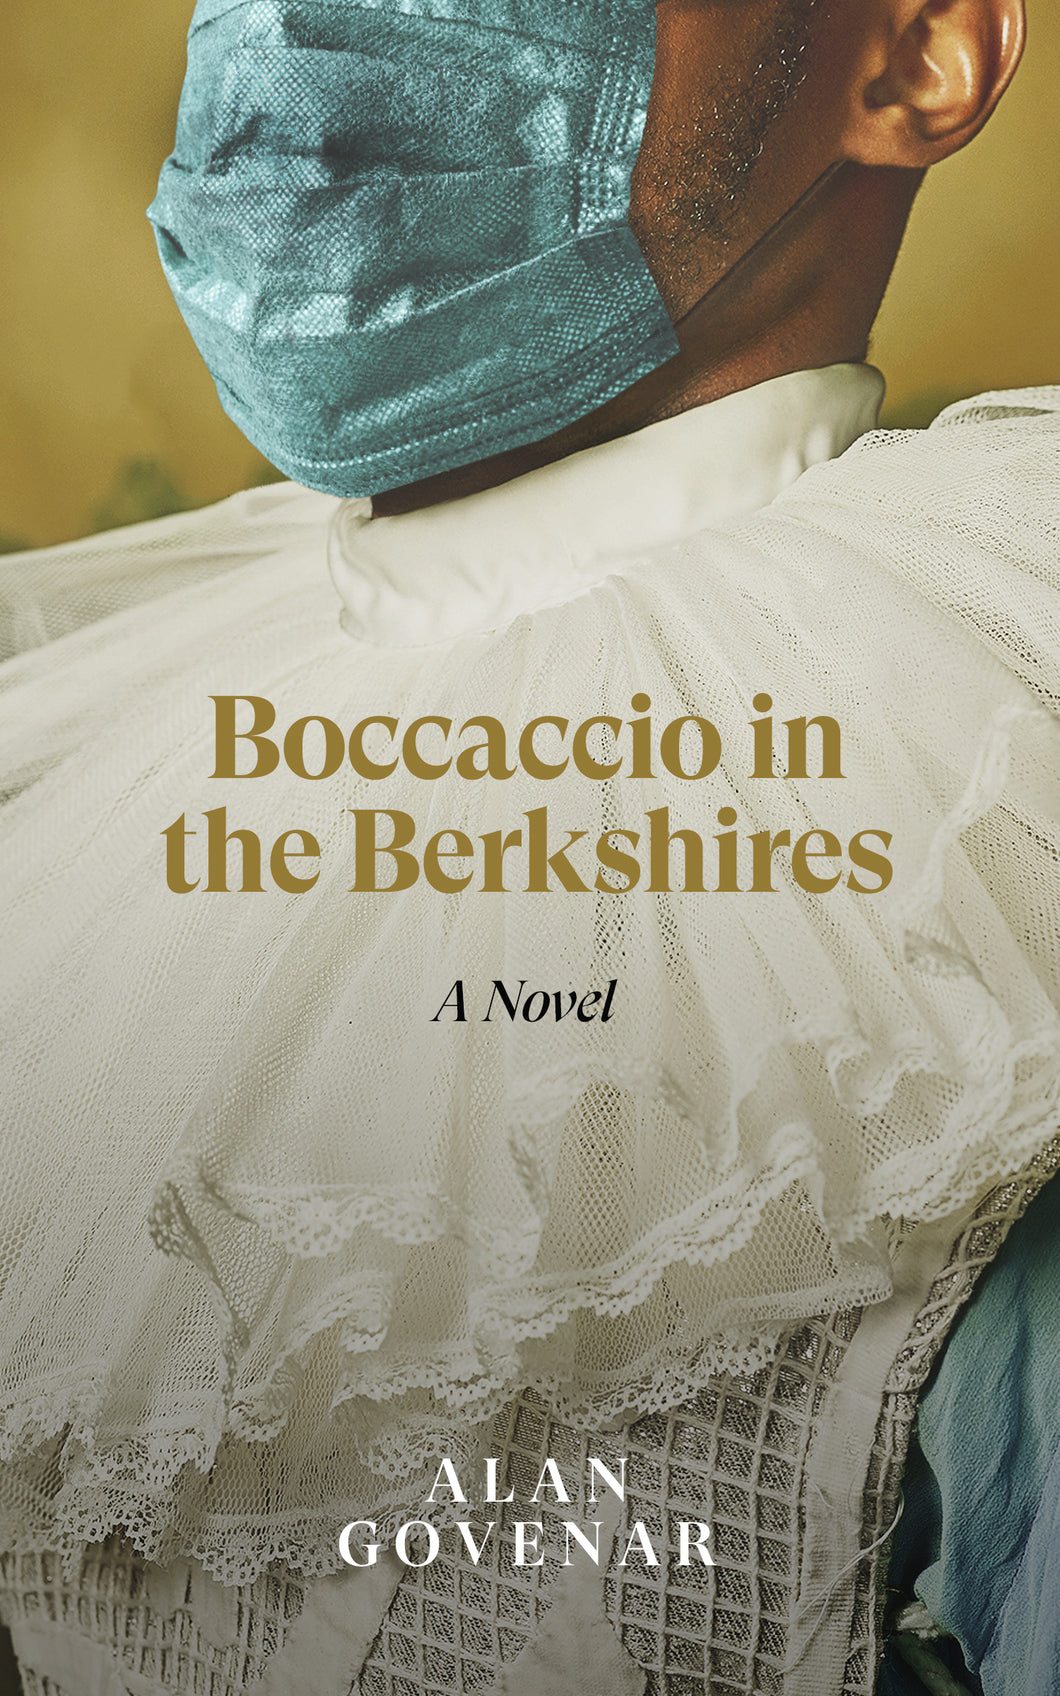 Boccaccio in the Berkshires